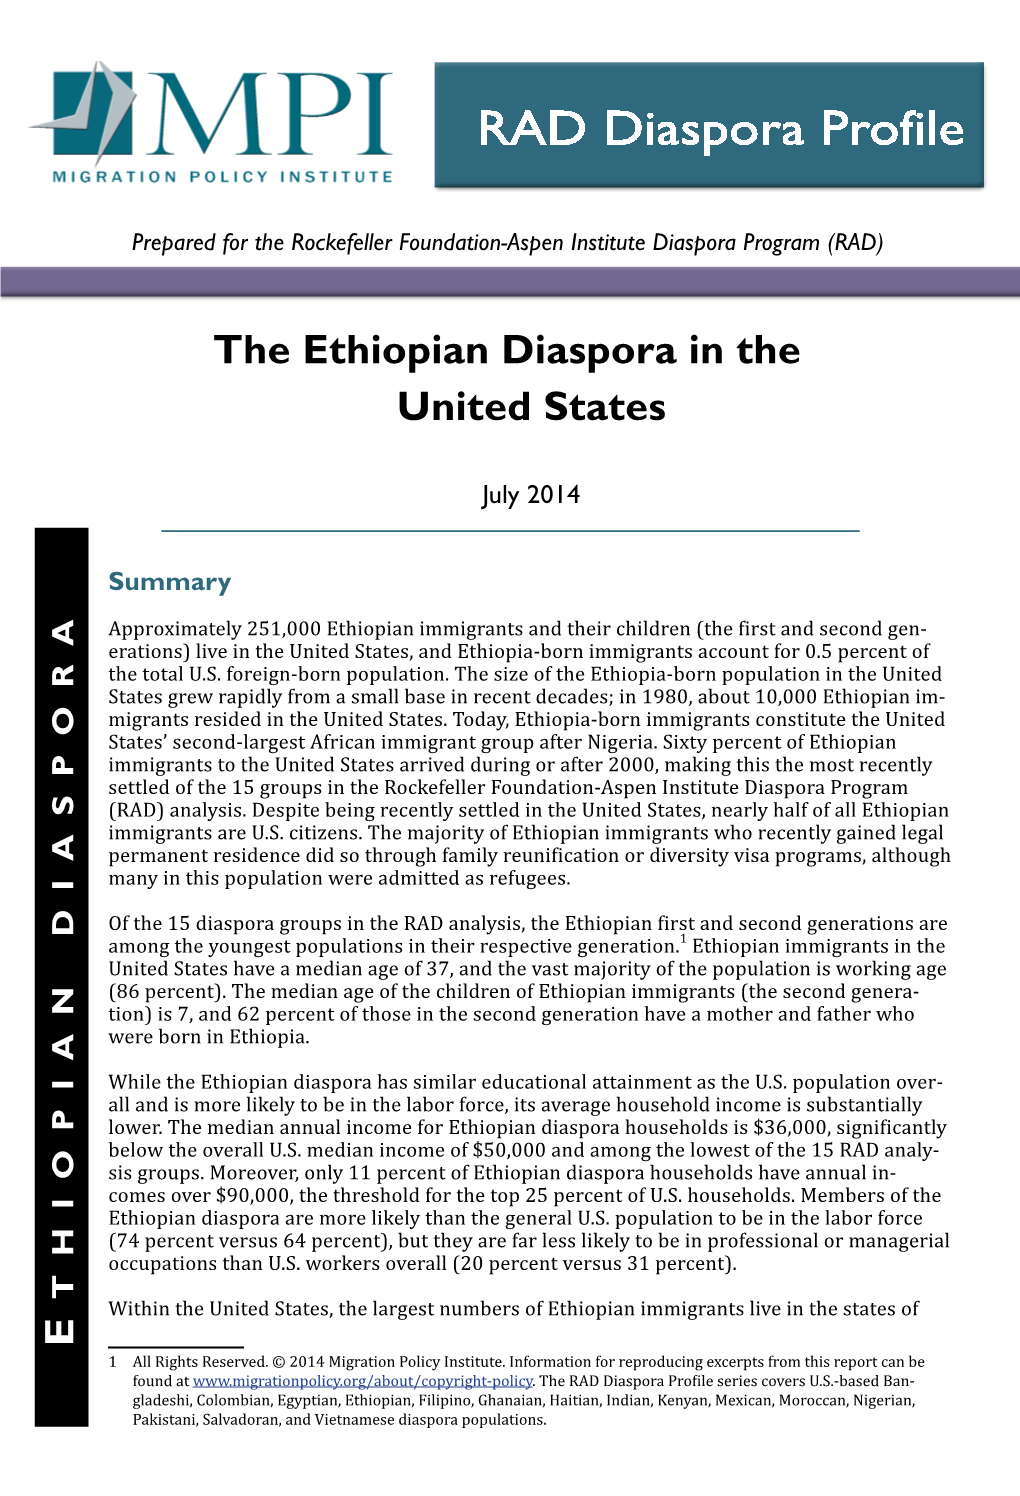 The Ethiopian Diaspora in the United States